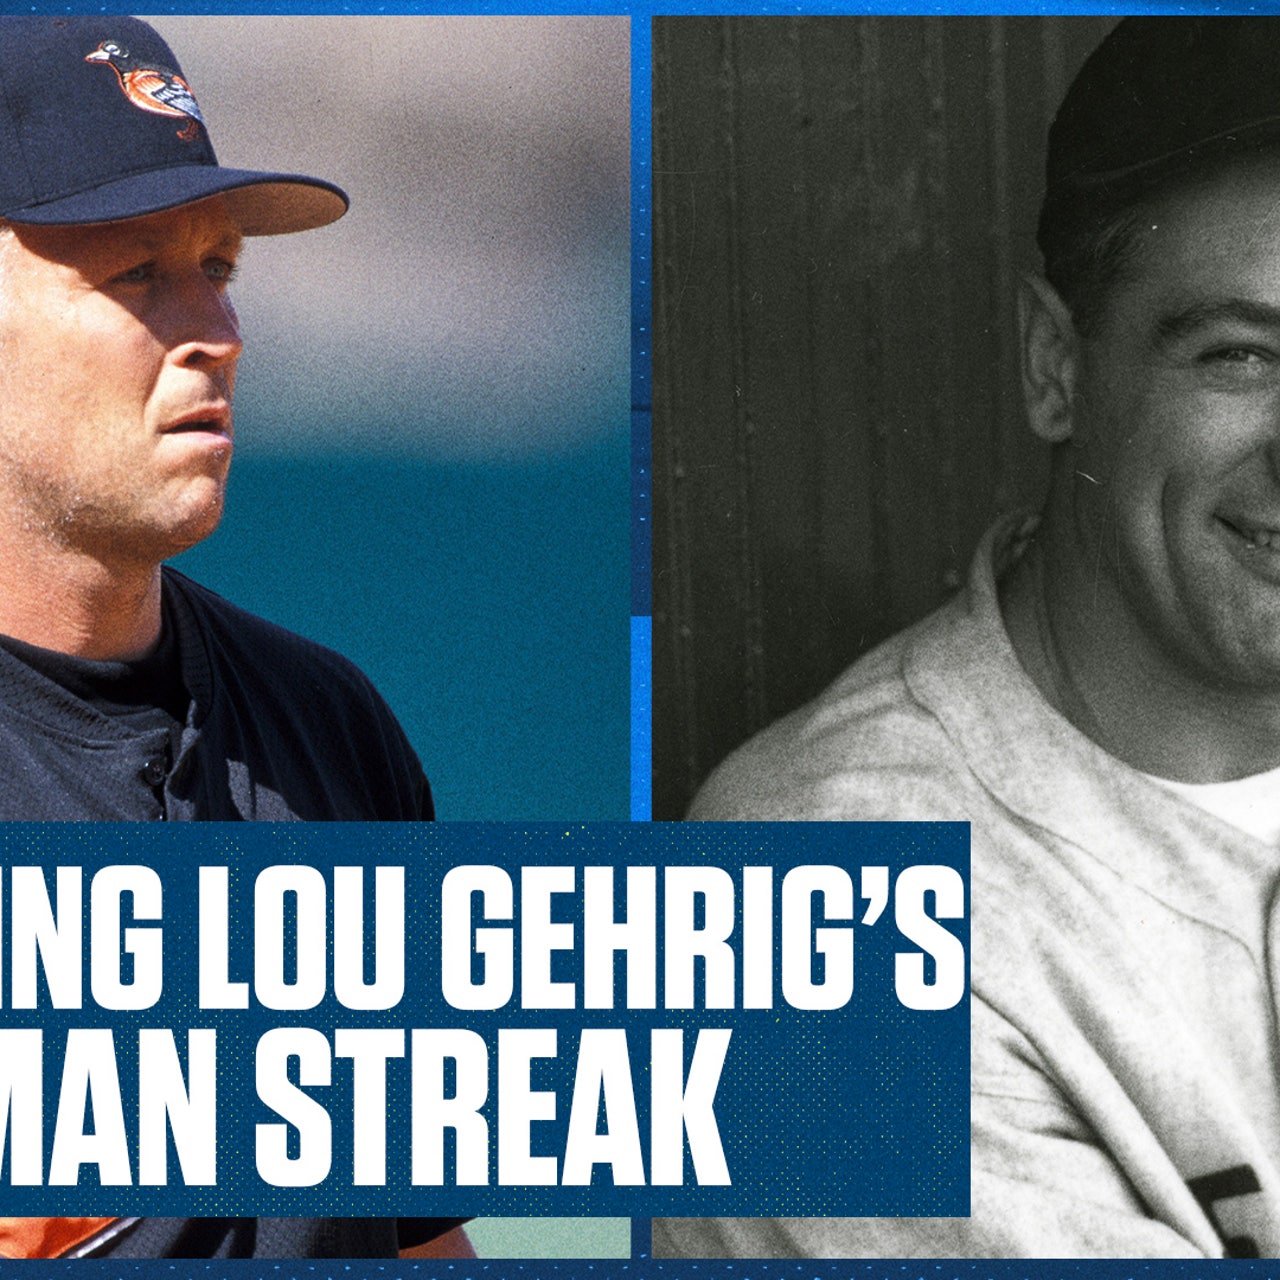 Cal Ripken breaks Lou Gehrig's record